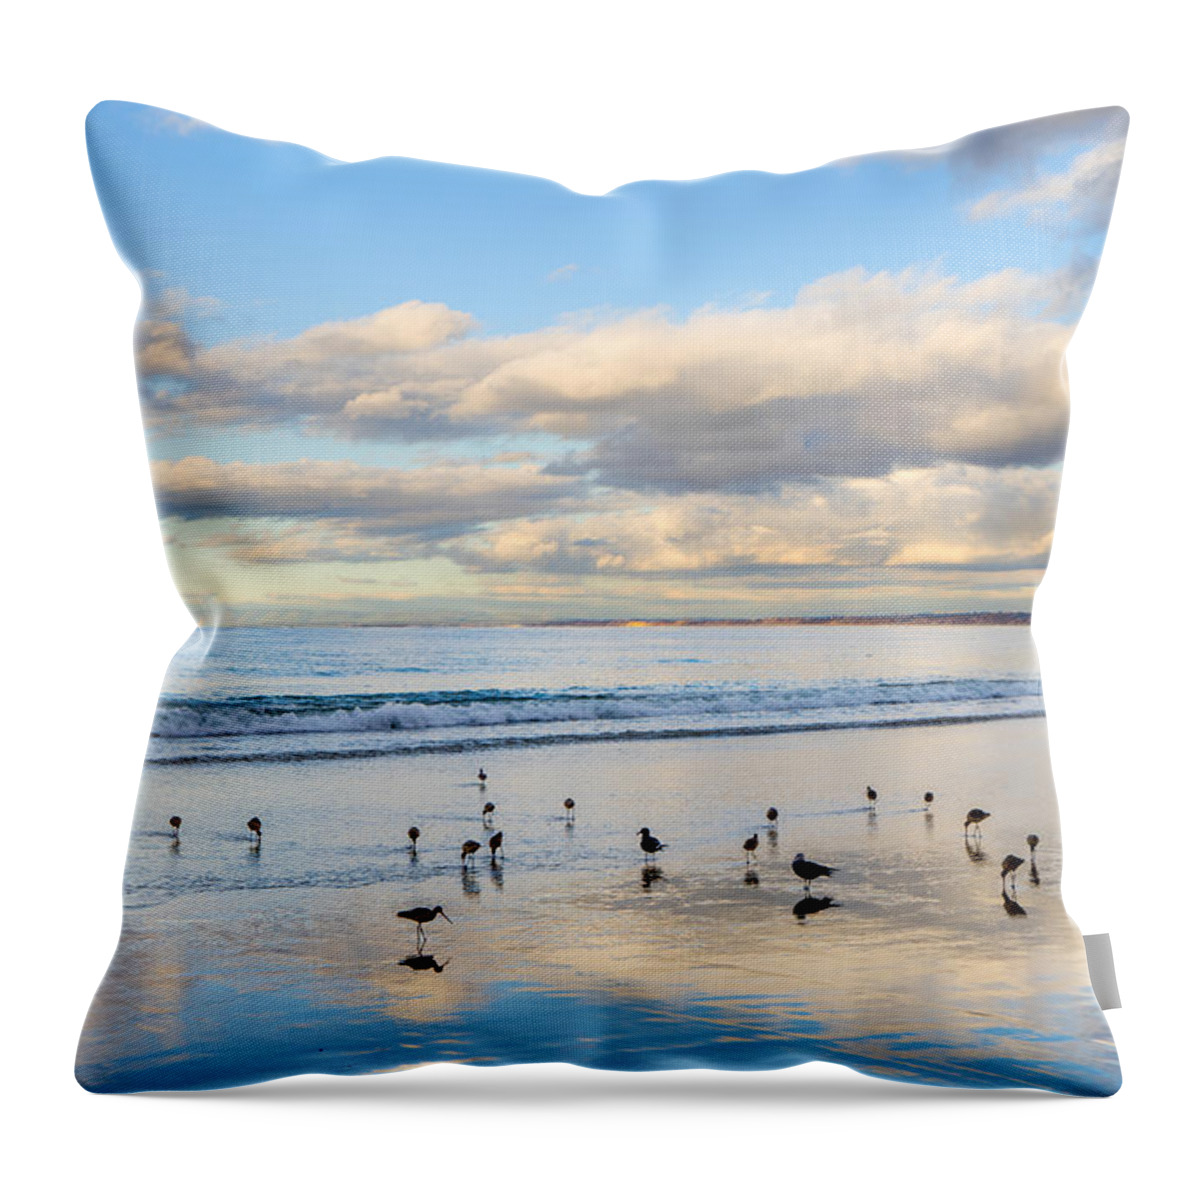 Birds Throw Pillow featuring the photograph Birds on the Beach by Derek Dean